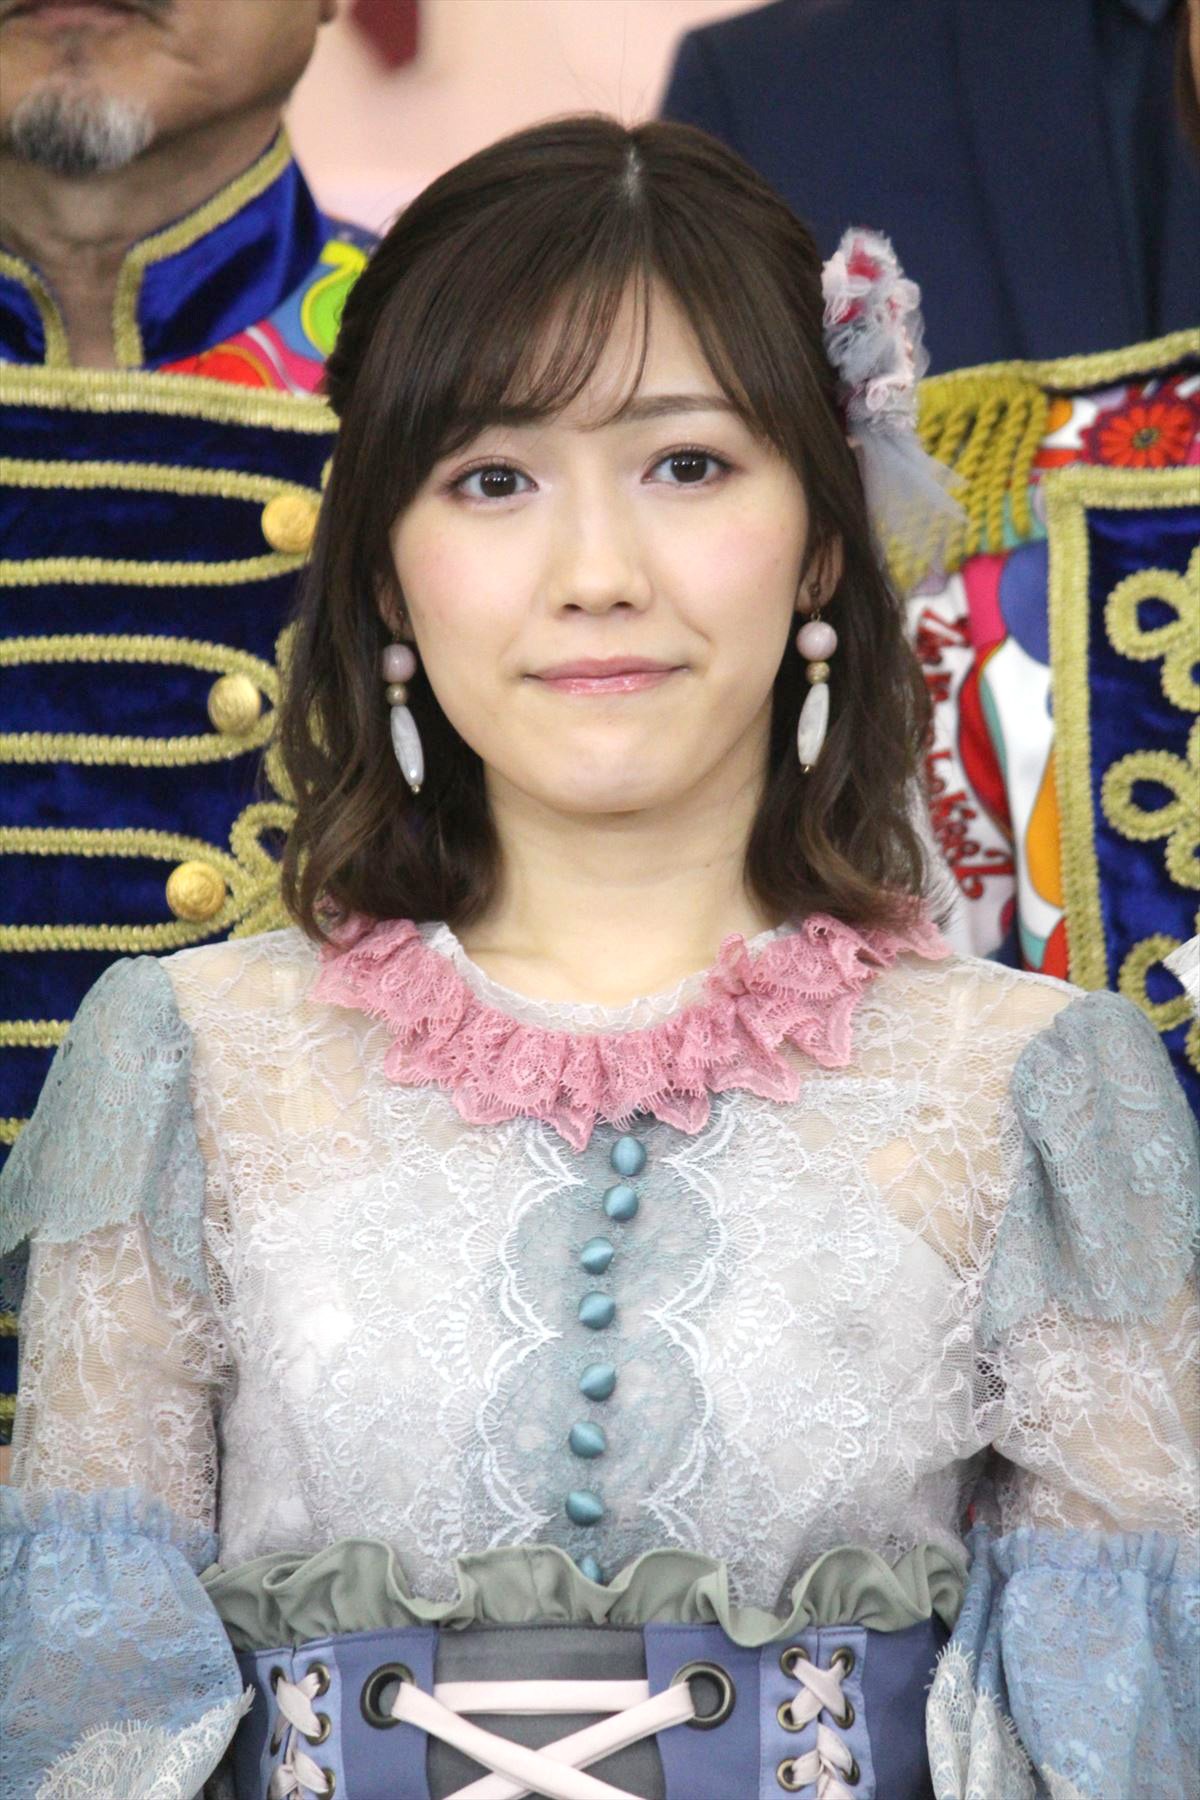 渡辺麻友、AKB48として最後のレコ大へ意気込み「最高のパフォーマンスを」